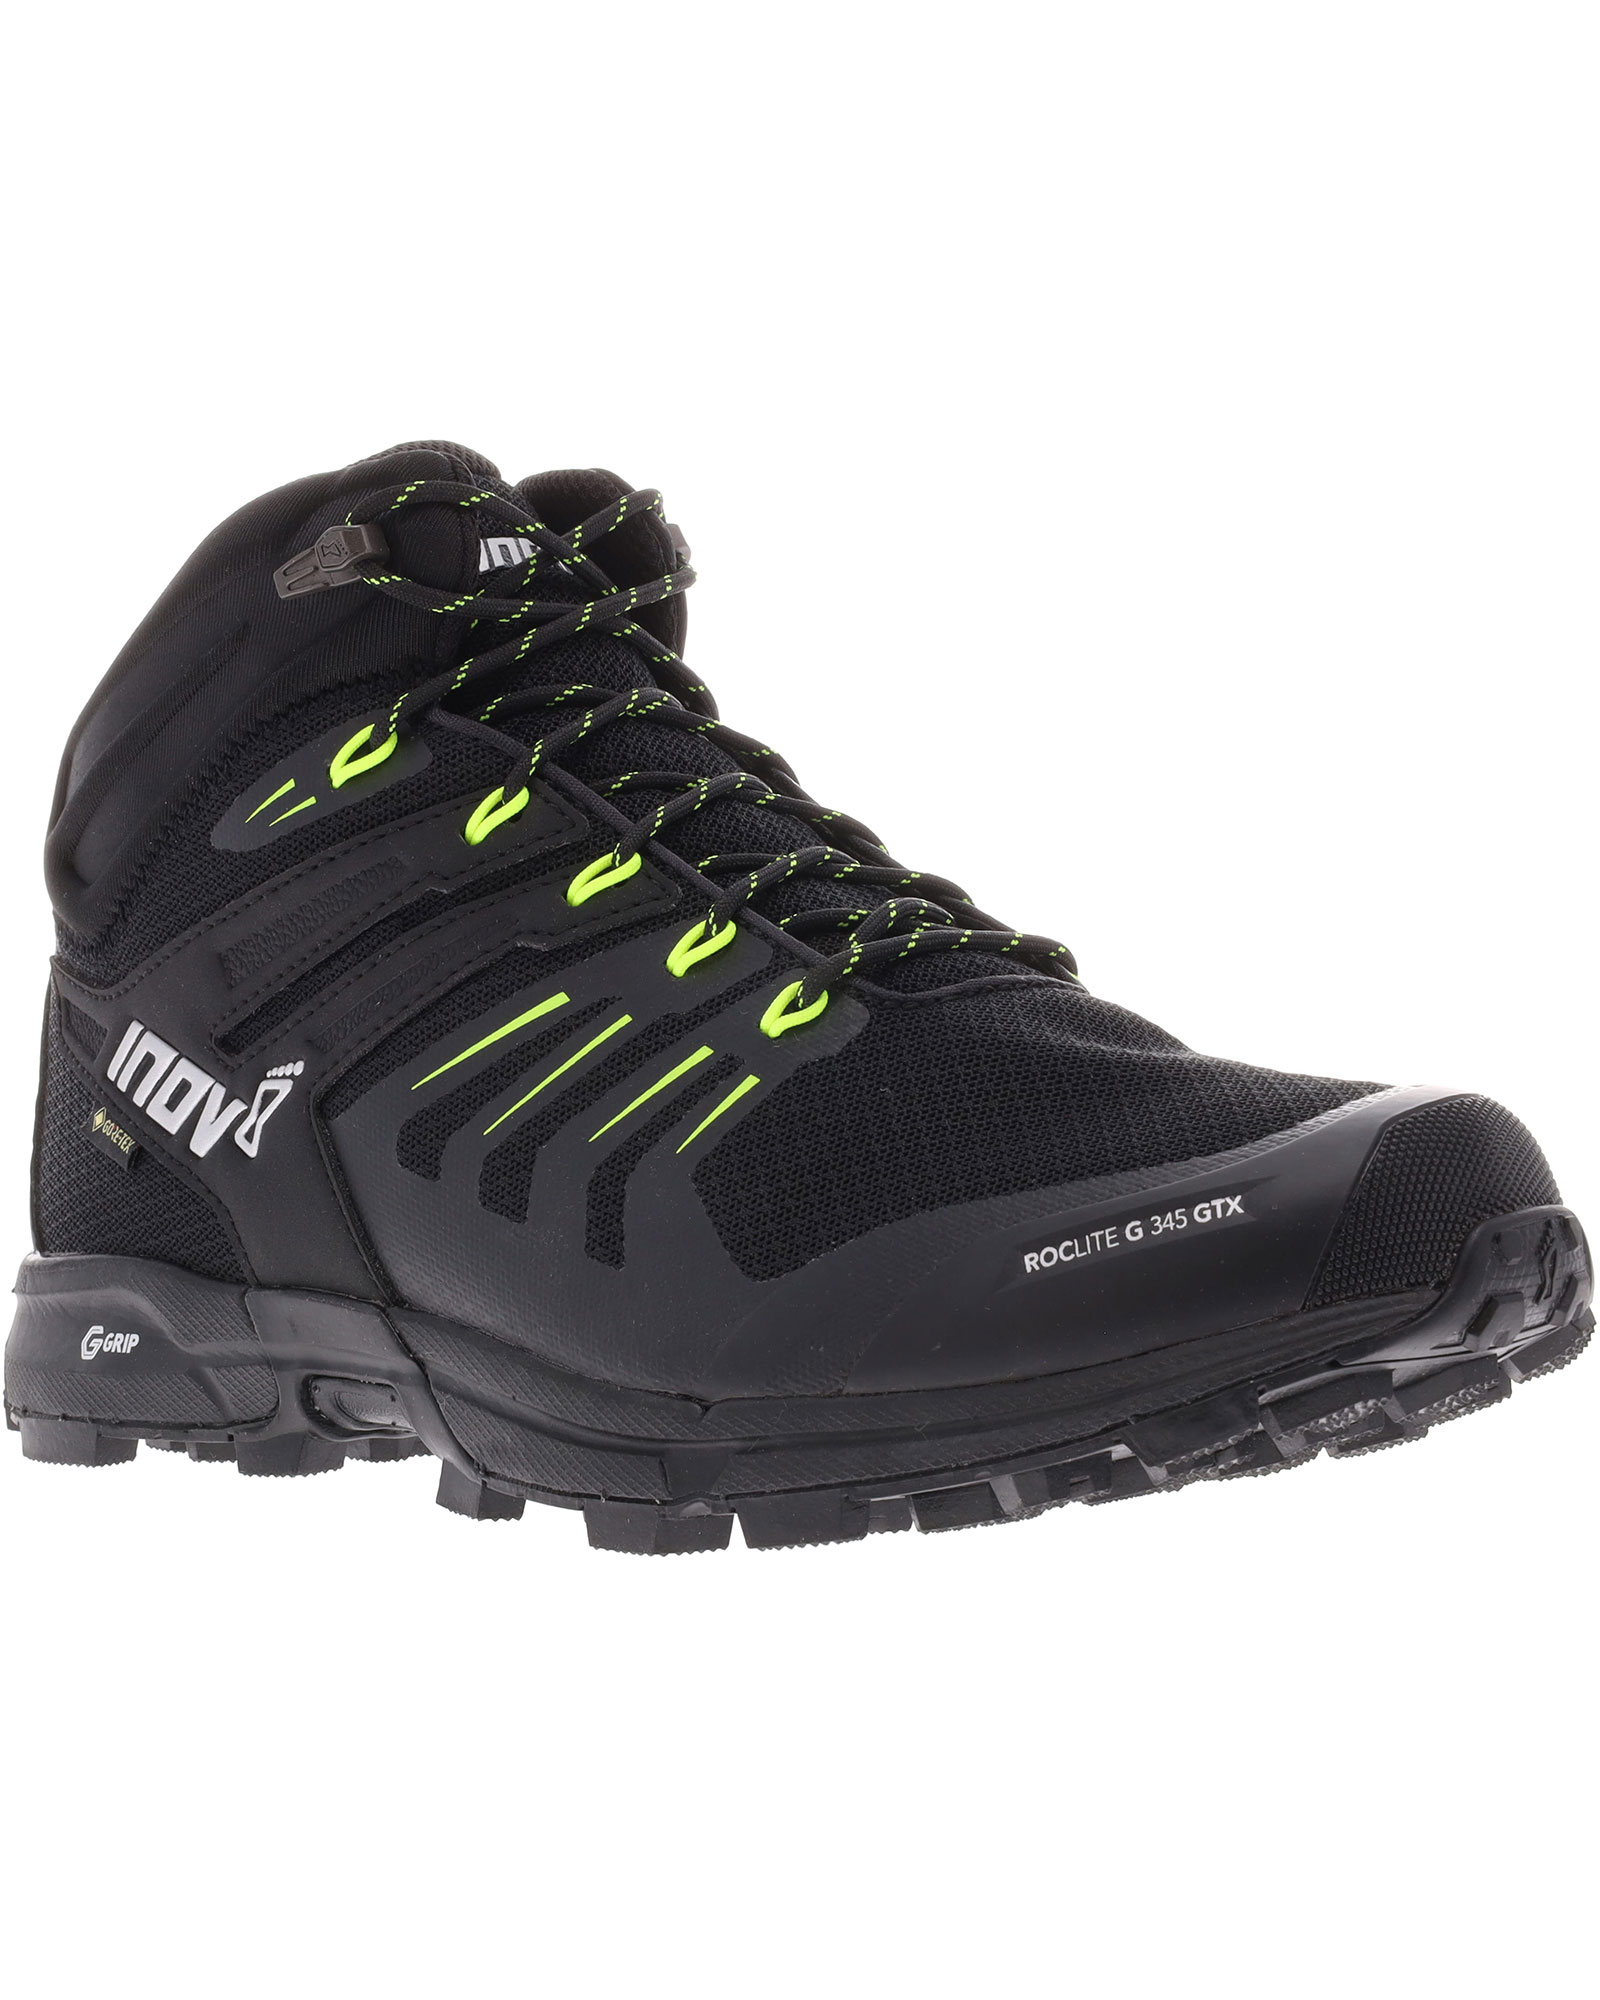 Inov 8 Roclite G 345 V2 GORE TEX Men’s Boots - Black/Lime UK 7